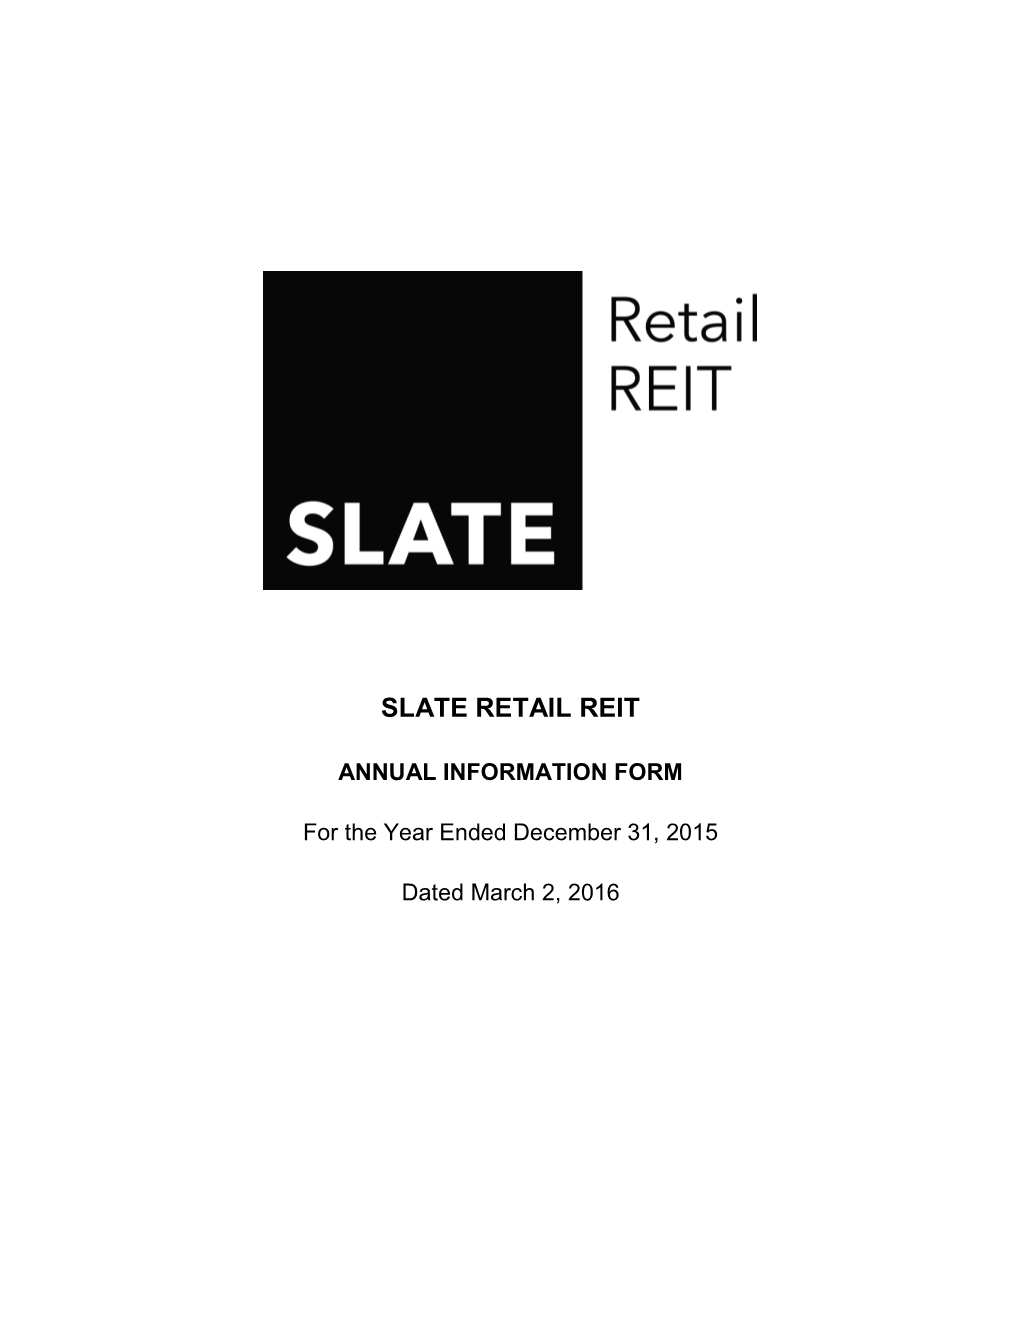 Slate Retail Reit